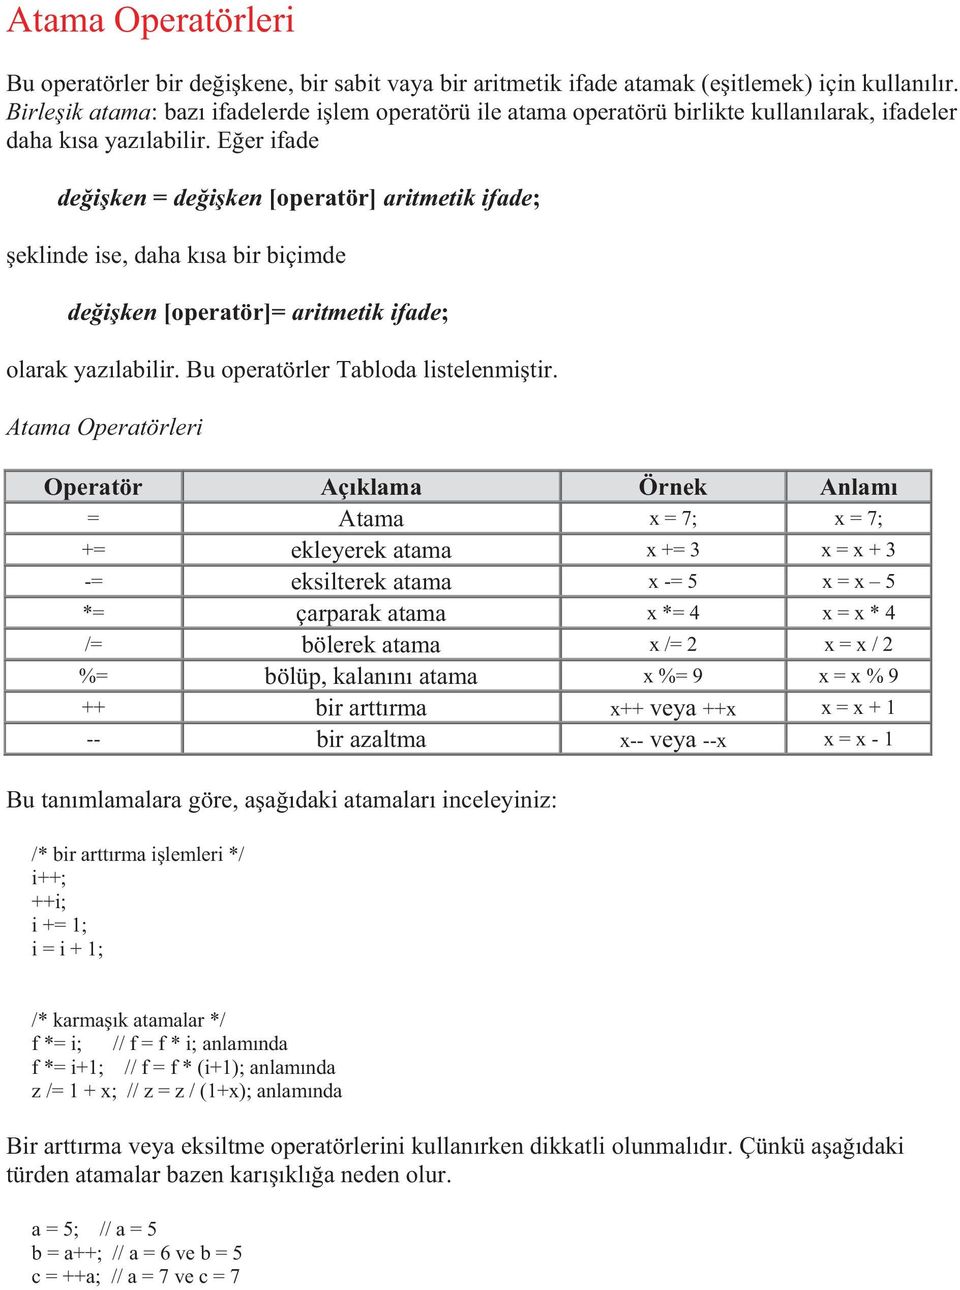 Eğer ifade değişken = değişken [operatör] aritmetik ifade; şeklinde ise, daha kısa bir biçimde değişken [operatör]= aritmetik ifade; olarak yazılabilir. Bu operatörler Tabloda listelenmiştir.